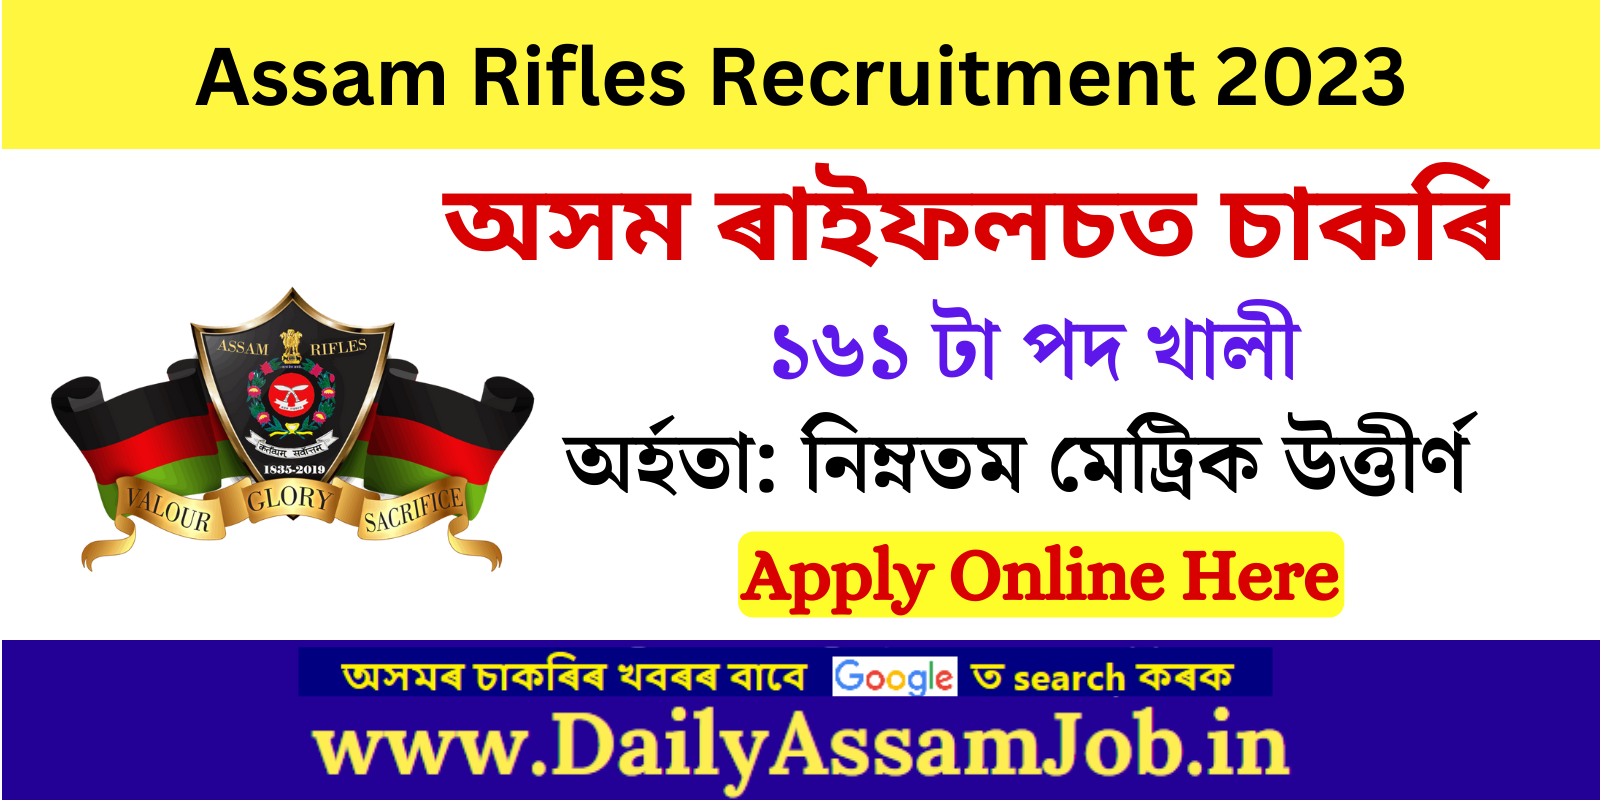 Assam Career :: Assam Rifles Recruitment for 161 Technical And Tradesman Vacancy